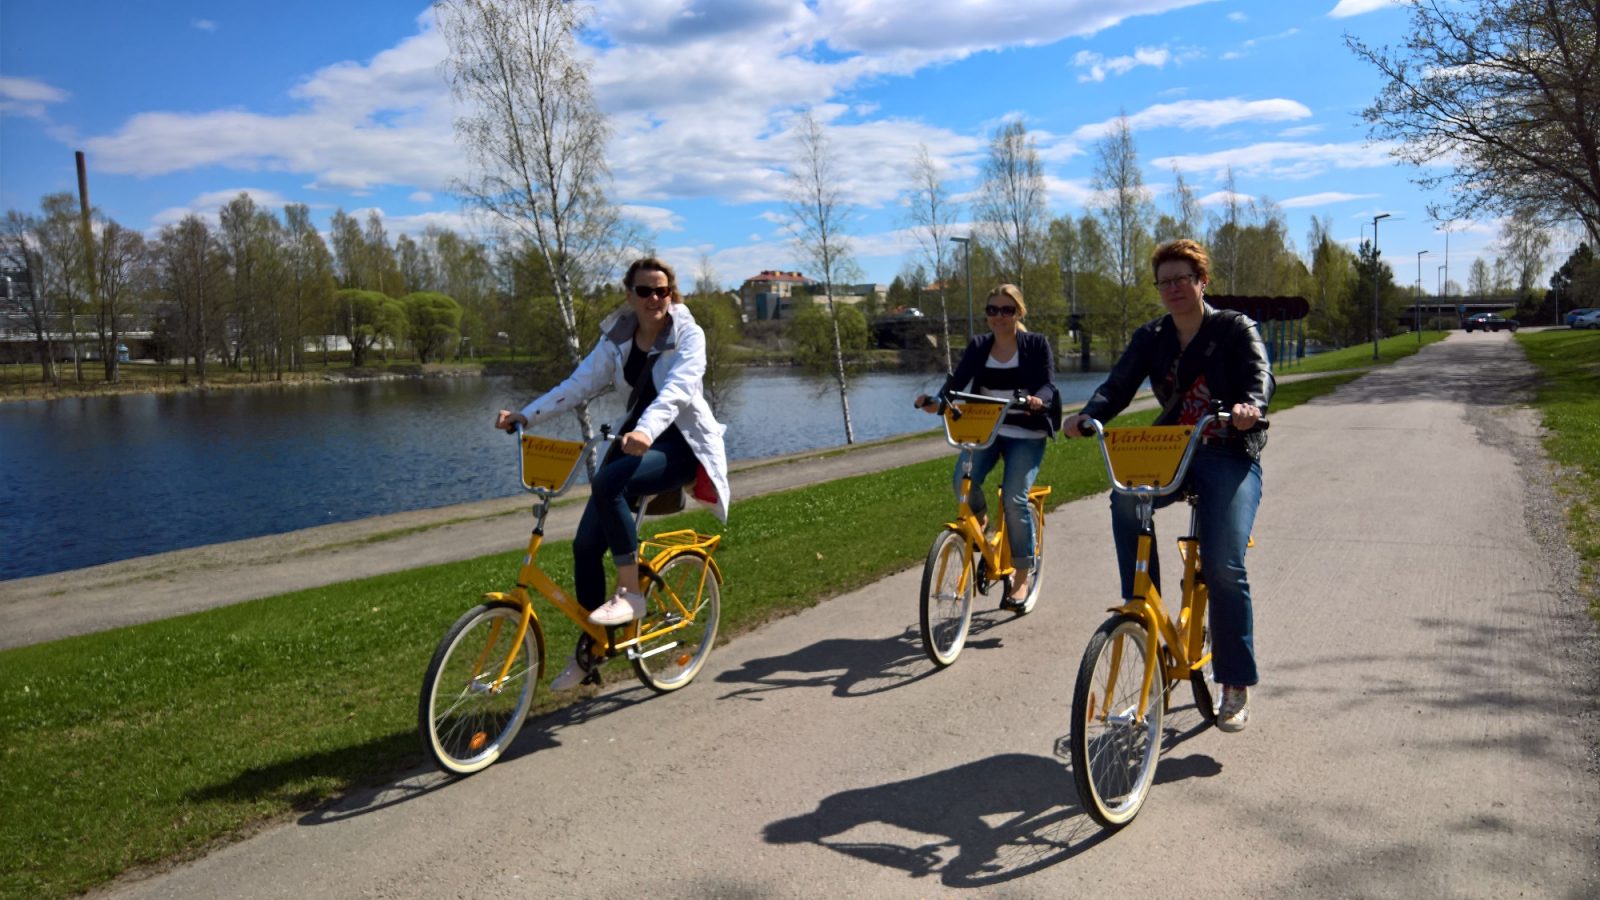 Kolme henkilöä pyöräilevät kaupunkipyörillä aurinkoisessa säässä, joen varressa kulkevalla pyörätiellä.